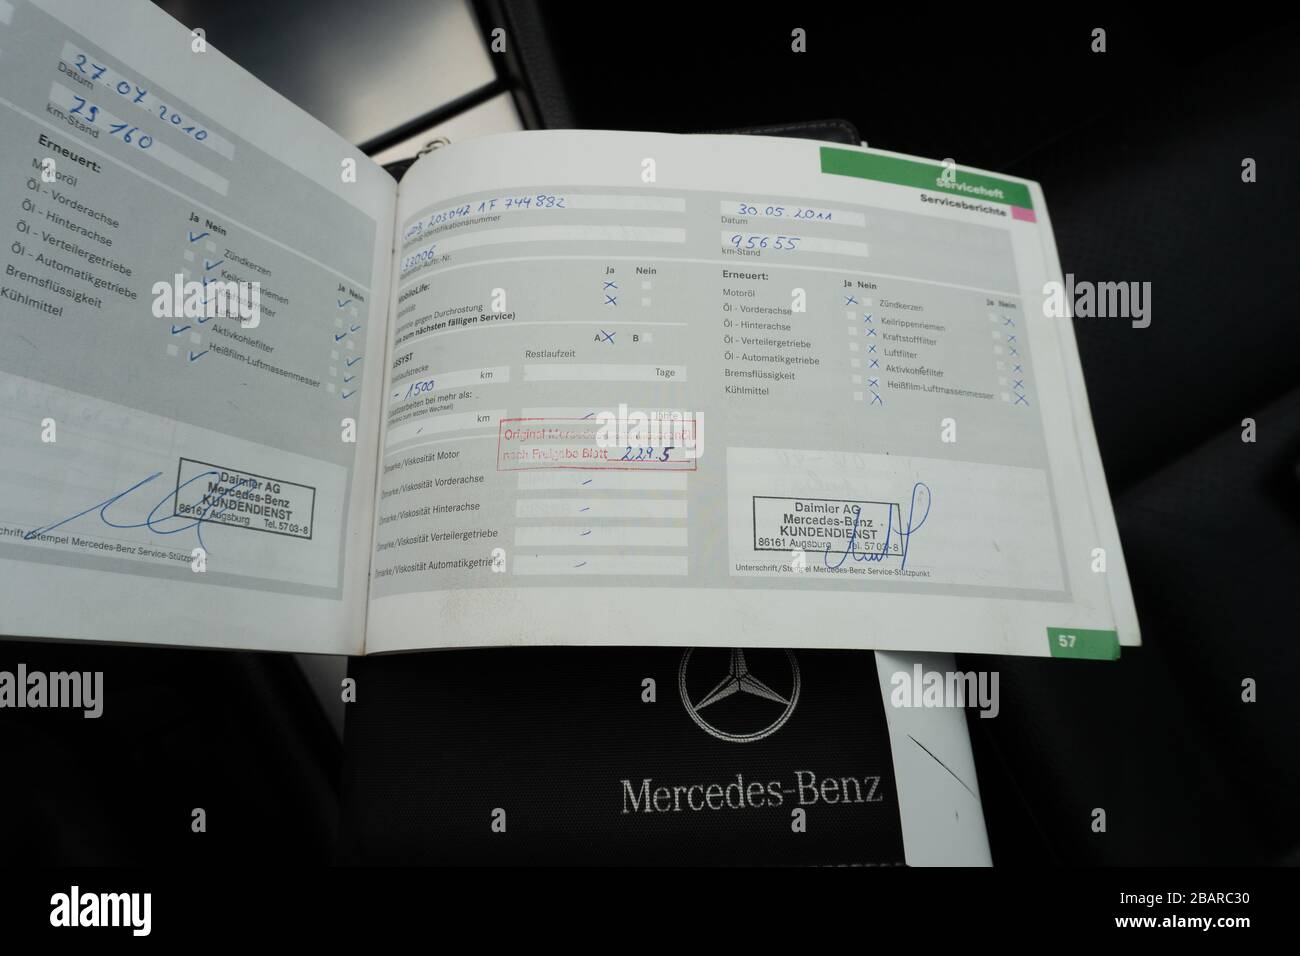 Historique d'entretien Mercedes Benz : entretien programmé, vérification des défauts du moteur, réparations et enregistrements d'entretien Banque D'Images